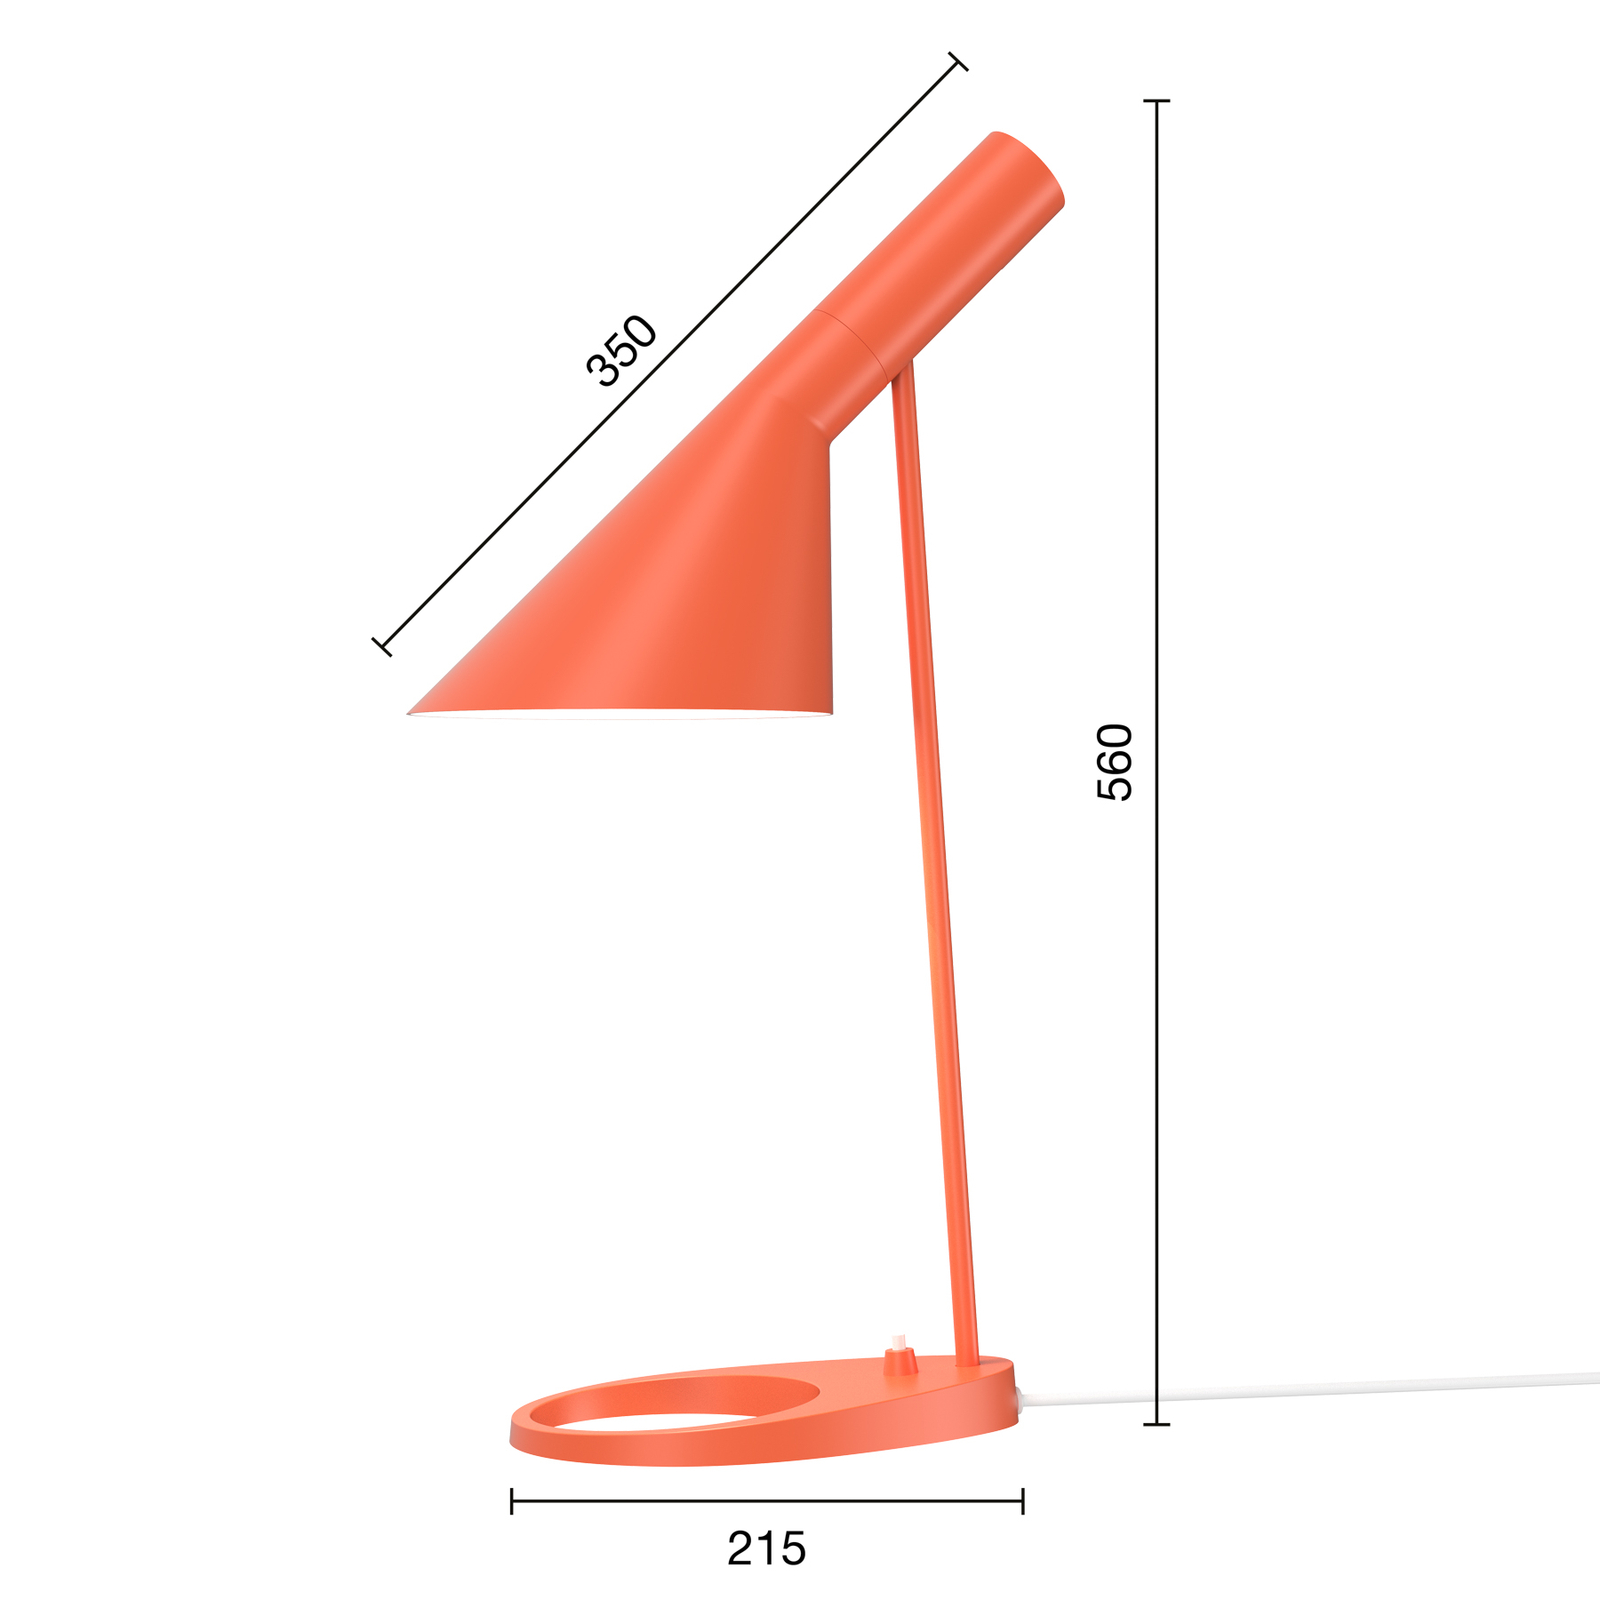 Dizajnová stolová lampa Louis Poulsen AJ oranžová